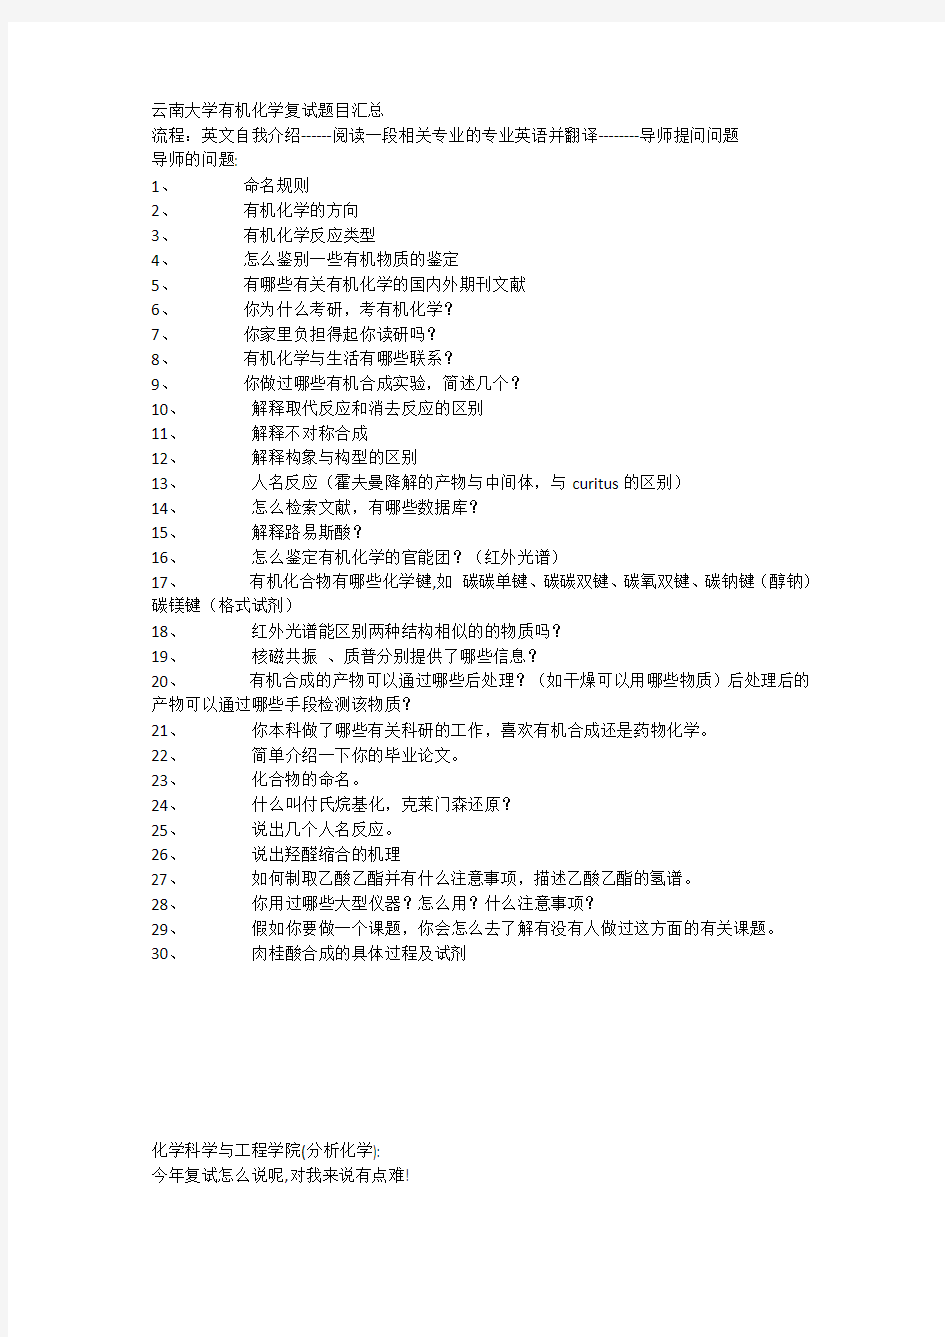 最新云南大学有机化学复试题目汇总28876知识分享